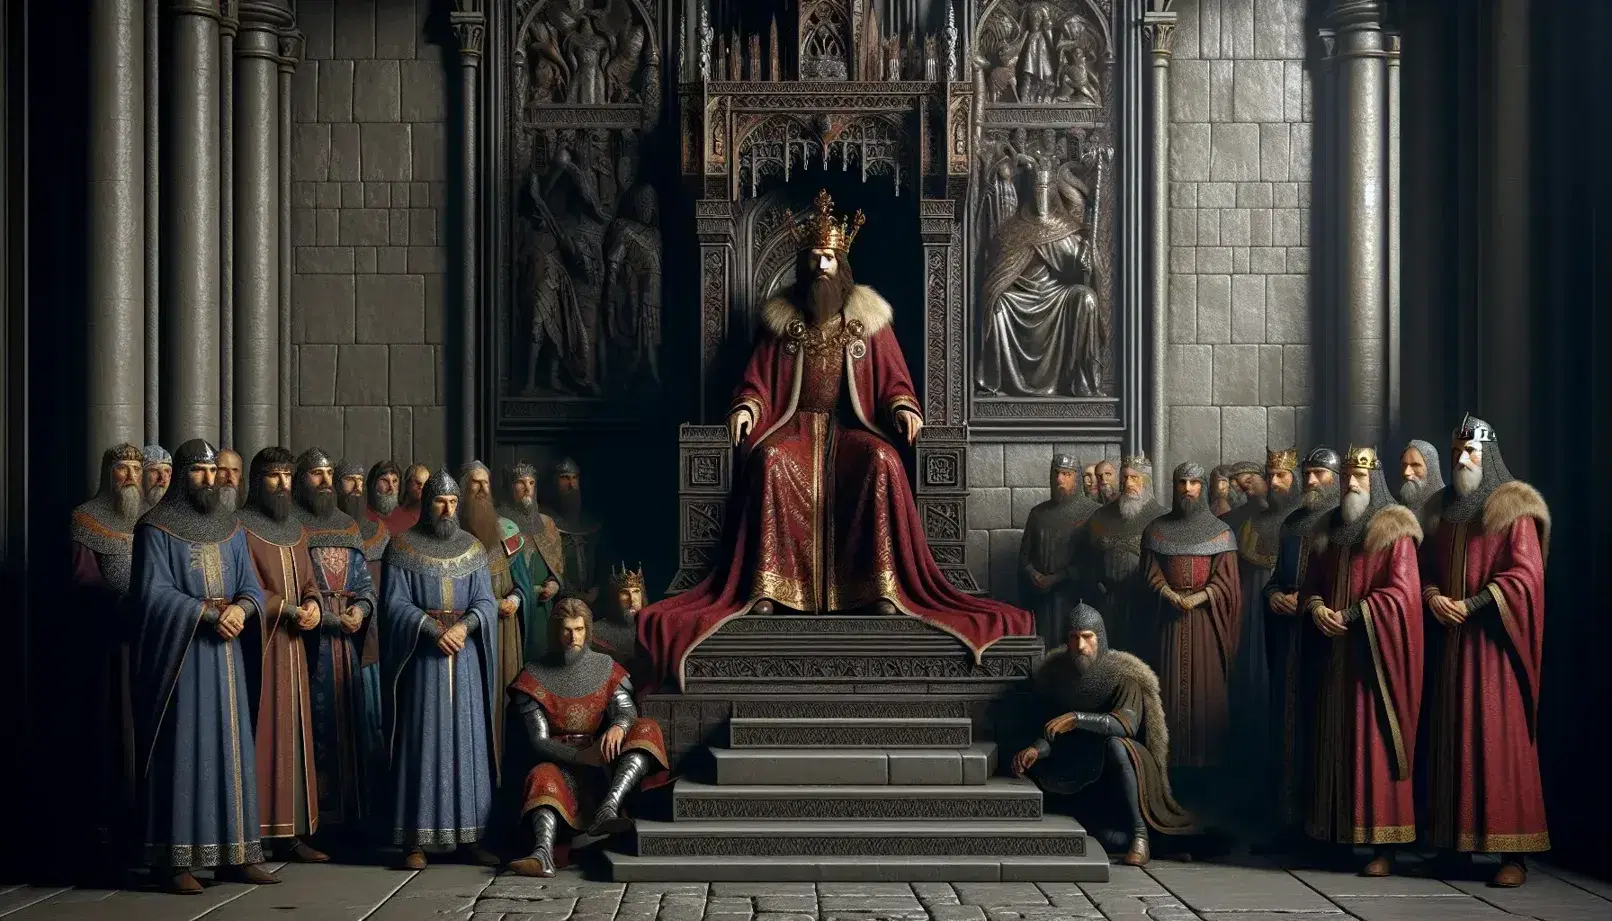 Scena medievale con sovrano in trono adornato, circondato da nobili e consiglieri, cavaliere in armatura e falconiere con falco, in sala gotica illuminata.